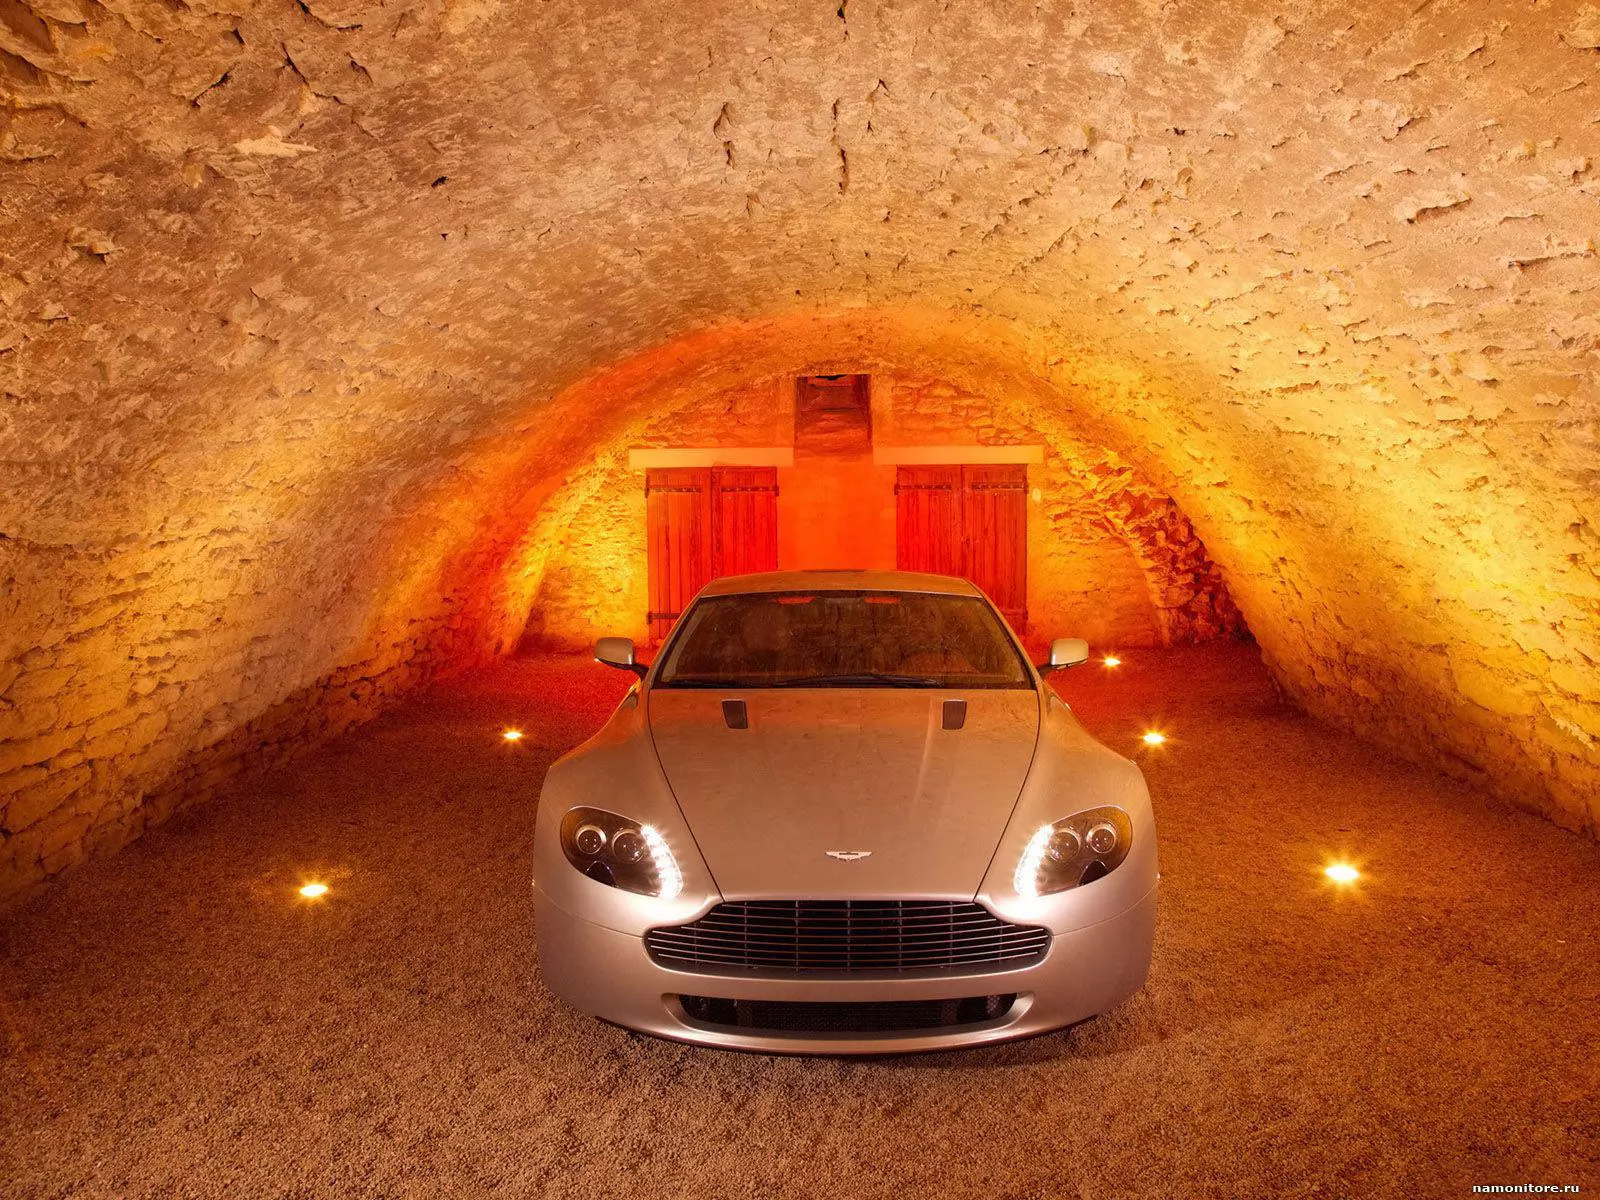 Серебристый Aston Martin Vantage-V8 под сводами оранжевого ангара, Aston Martin, автомобили, лучшее, оранжевое, техника х